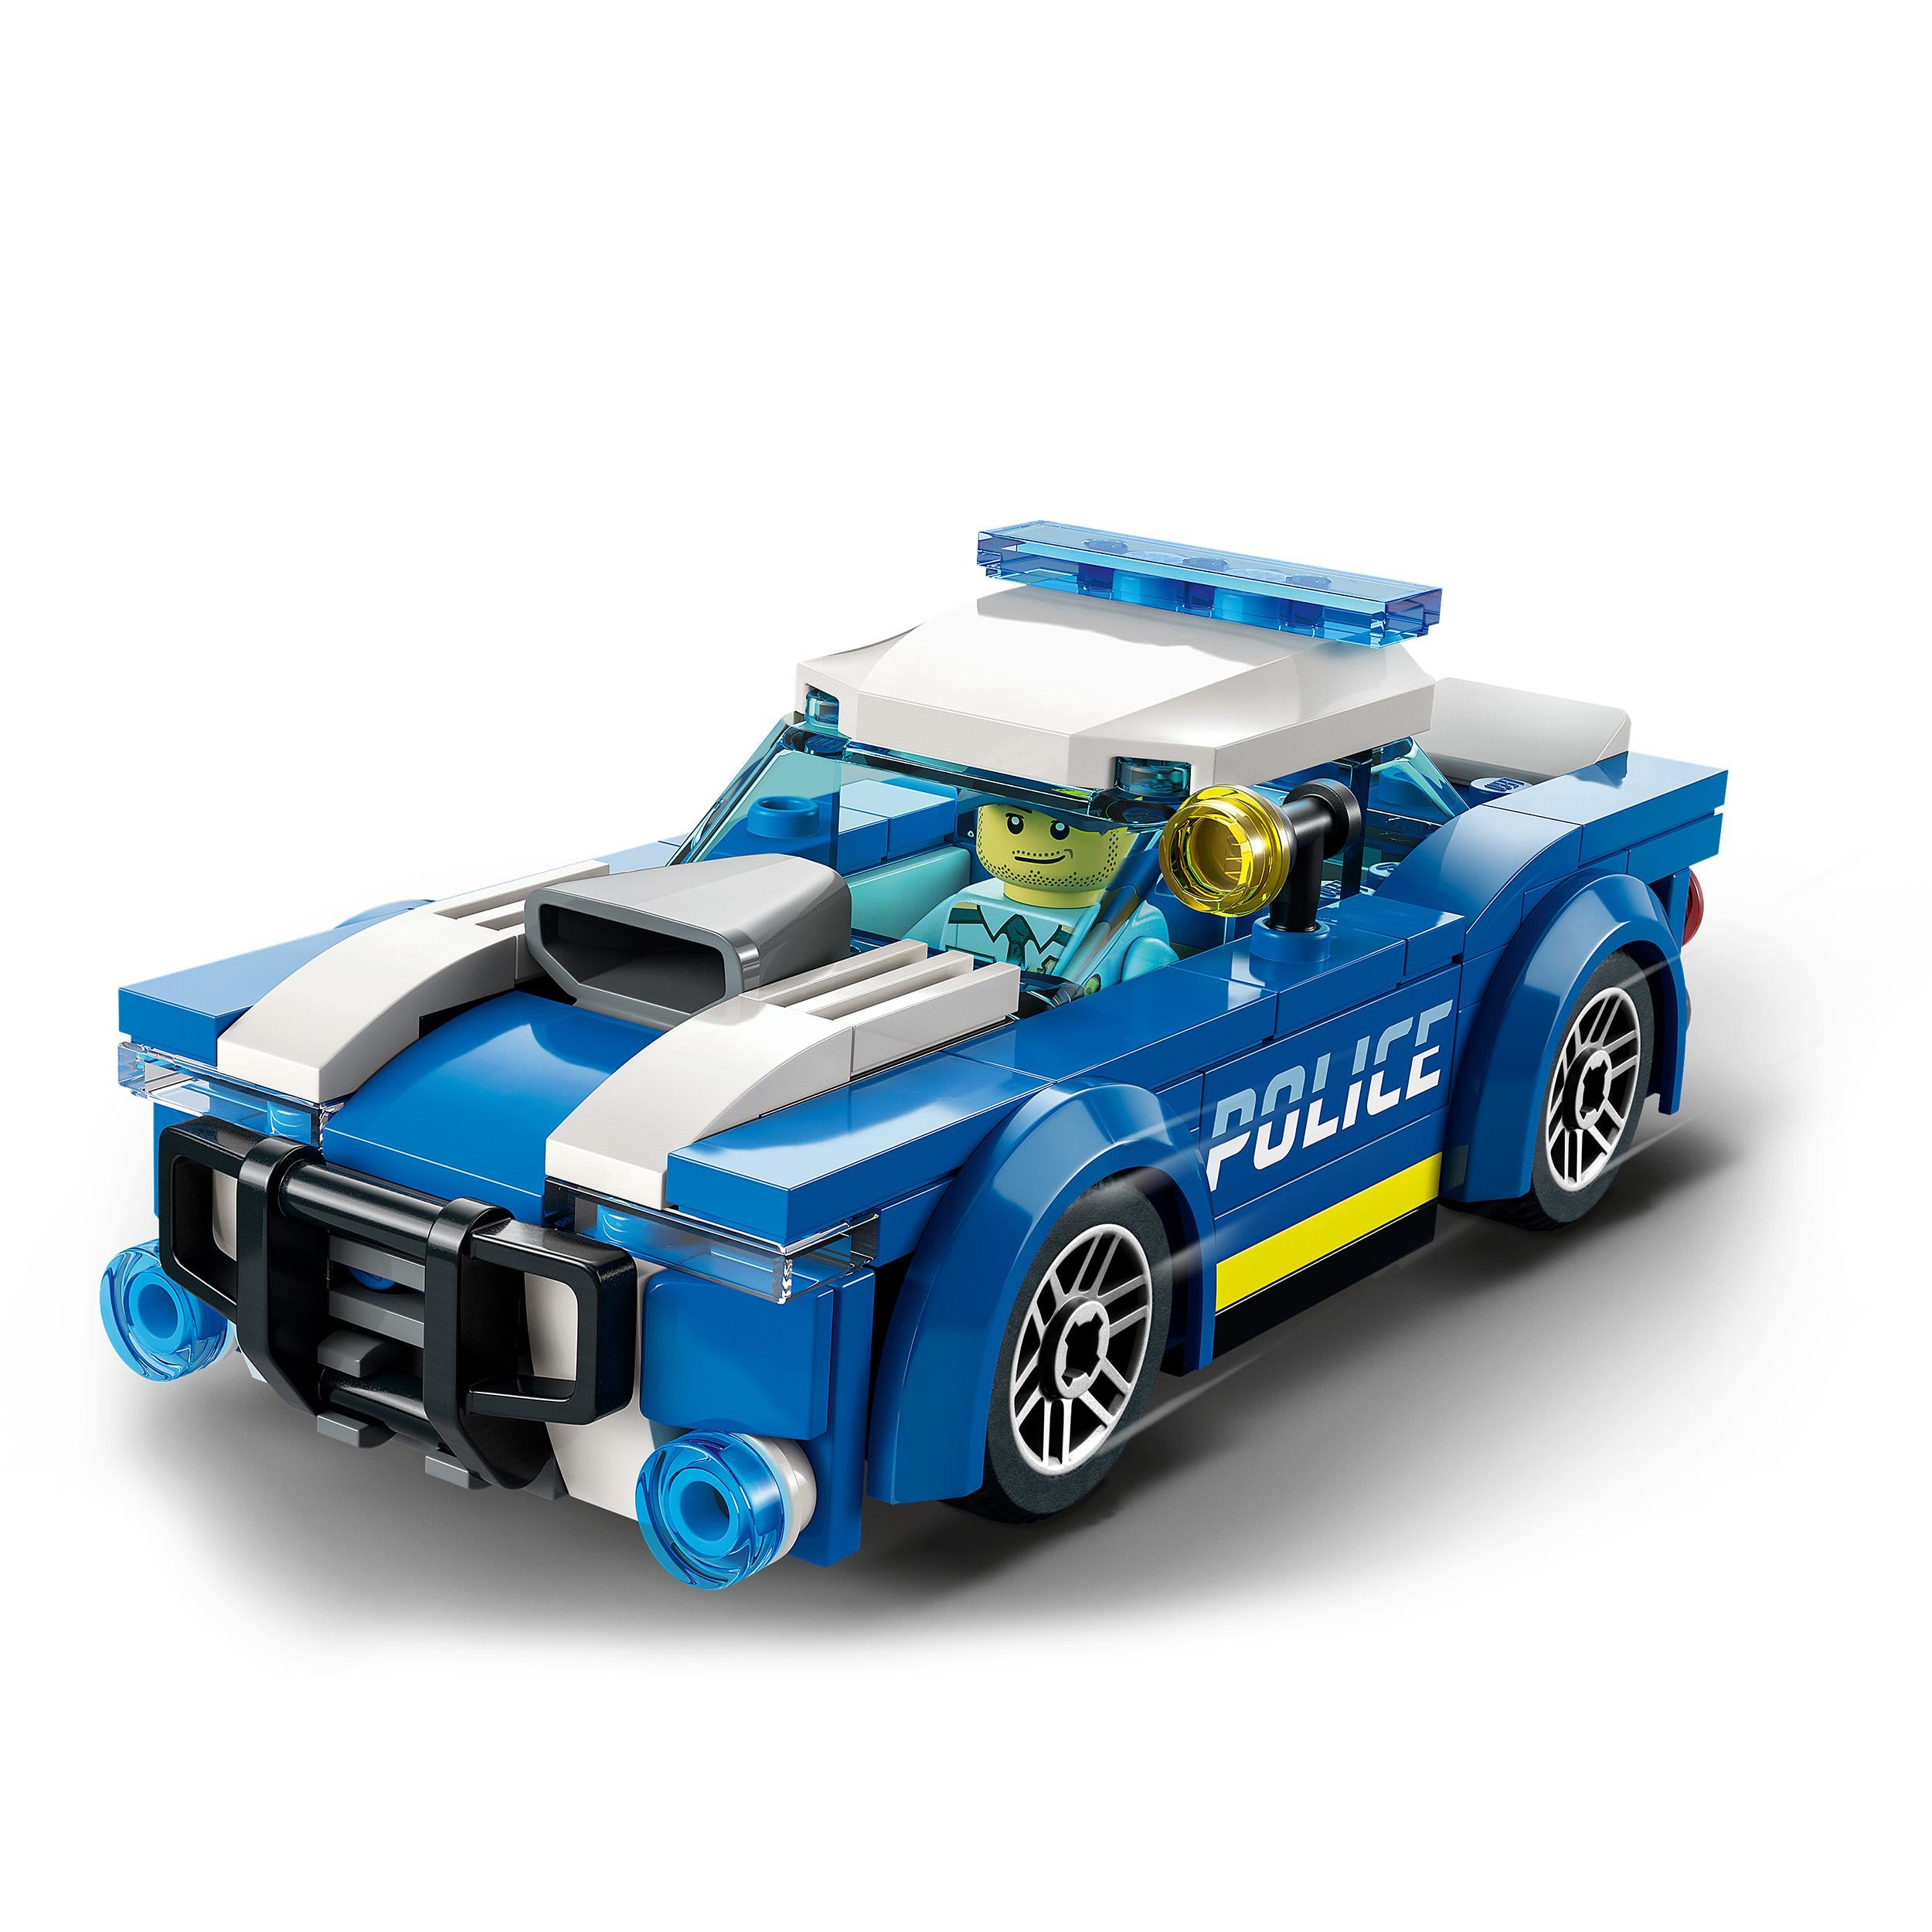 60312 LEGO® City - Auto della Polizia